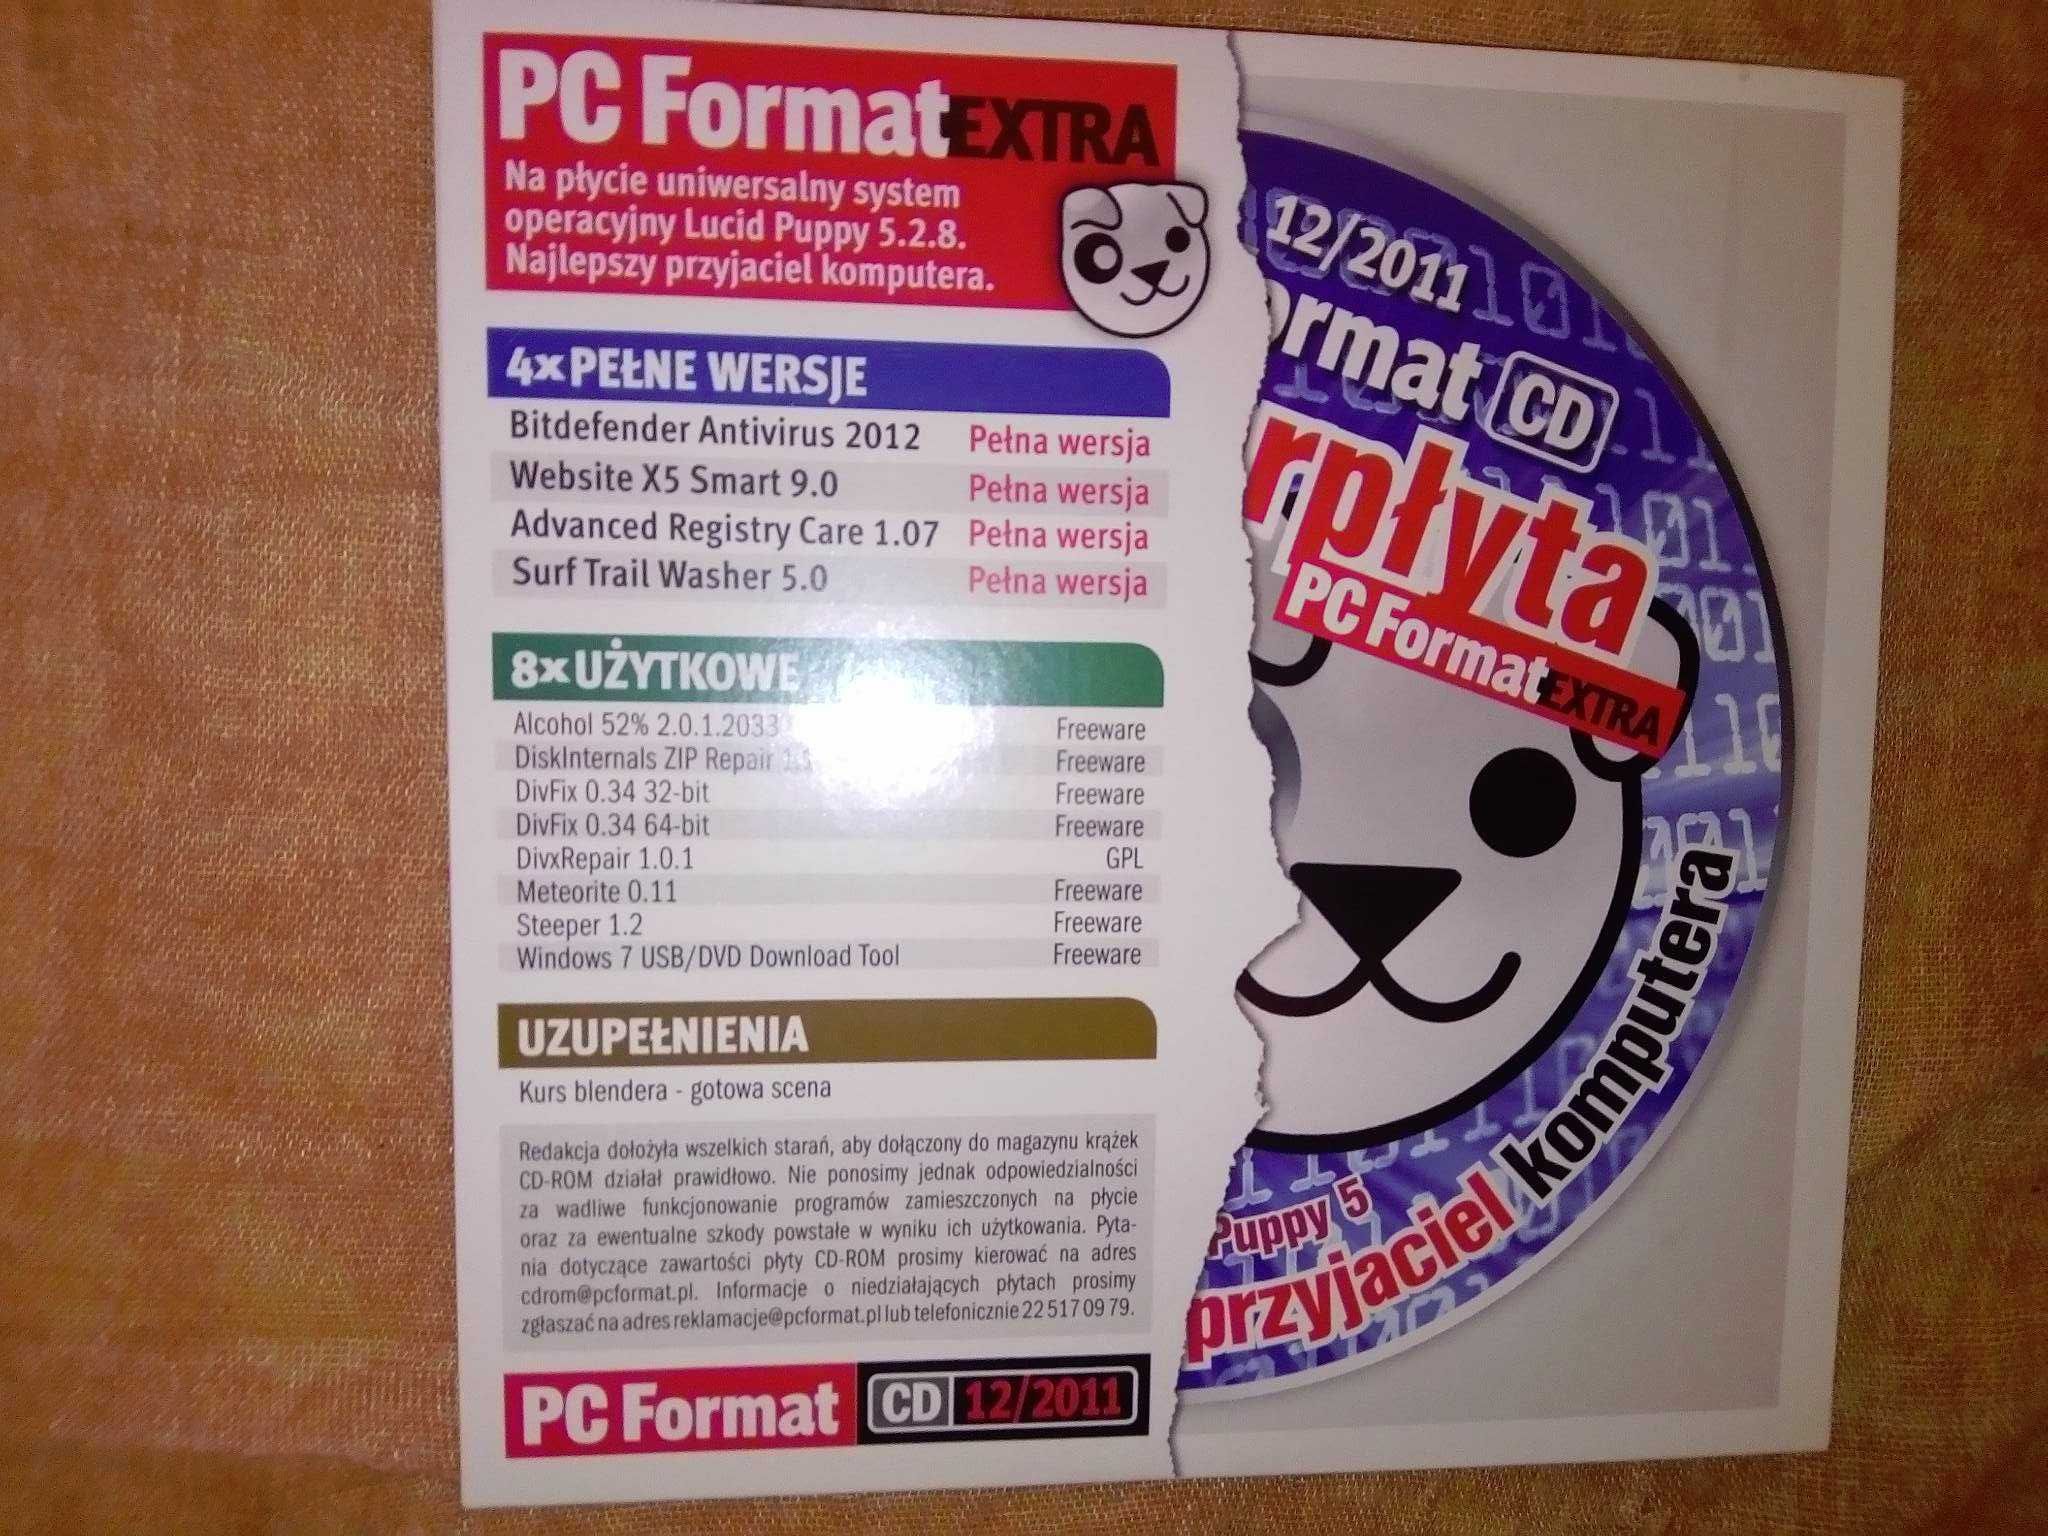 PC Format 12 2011 grudzień (136) Gazeta + płyta CD Czasopismo